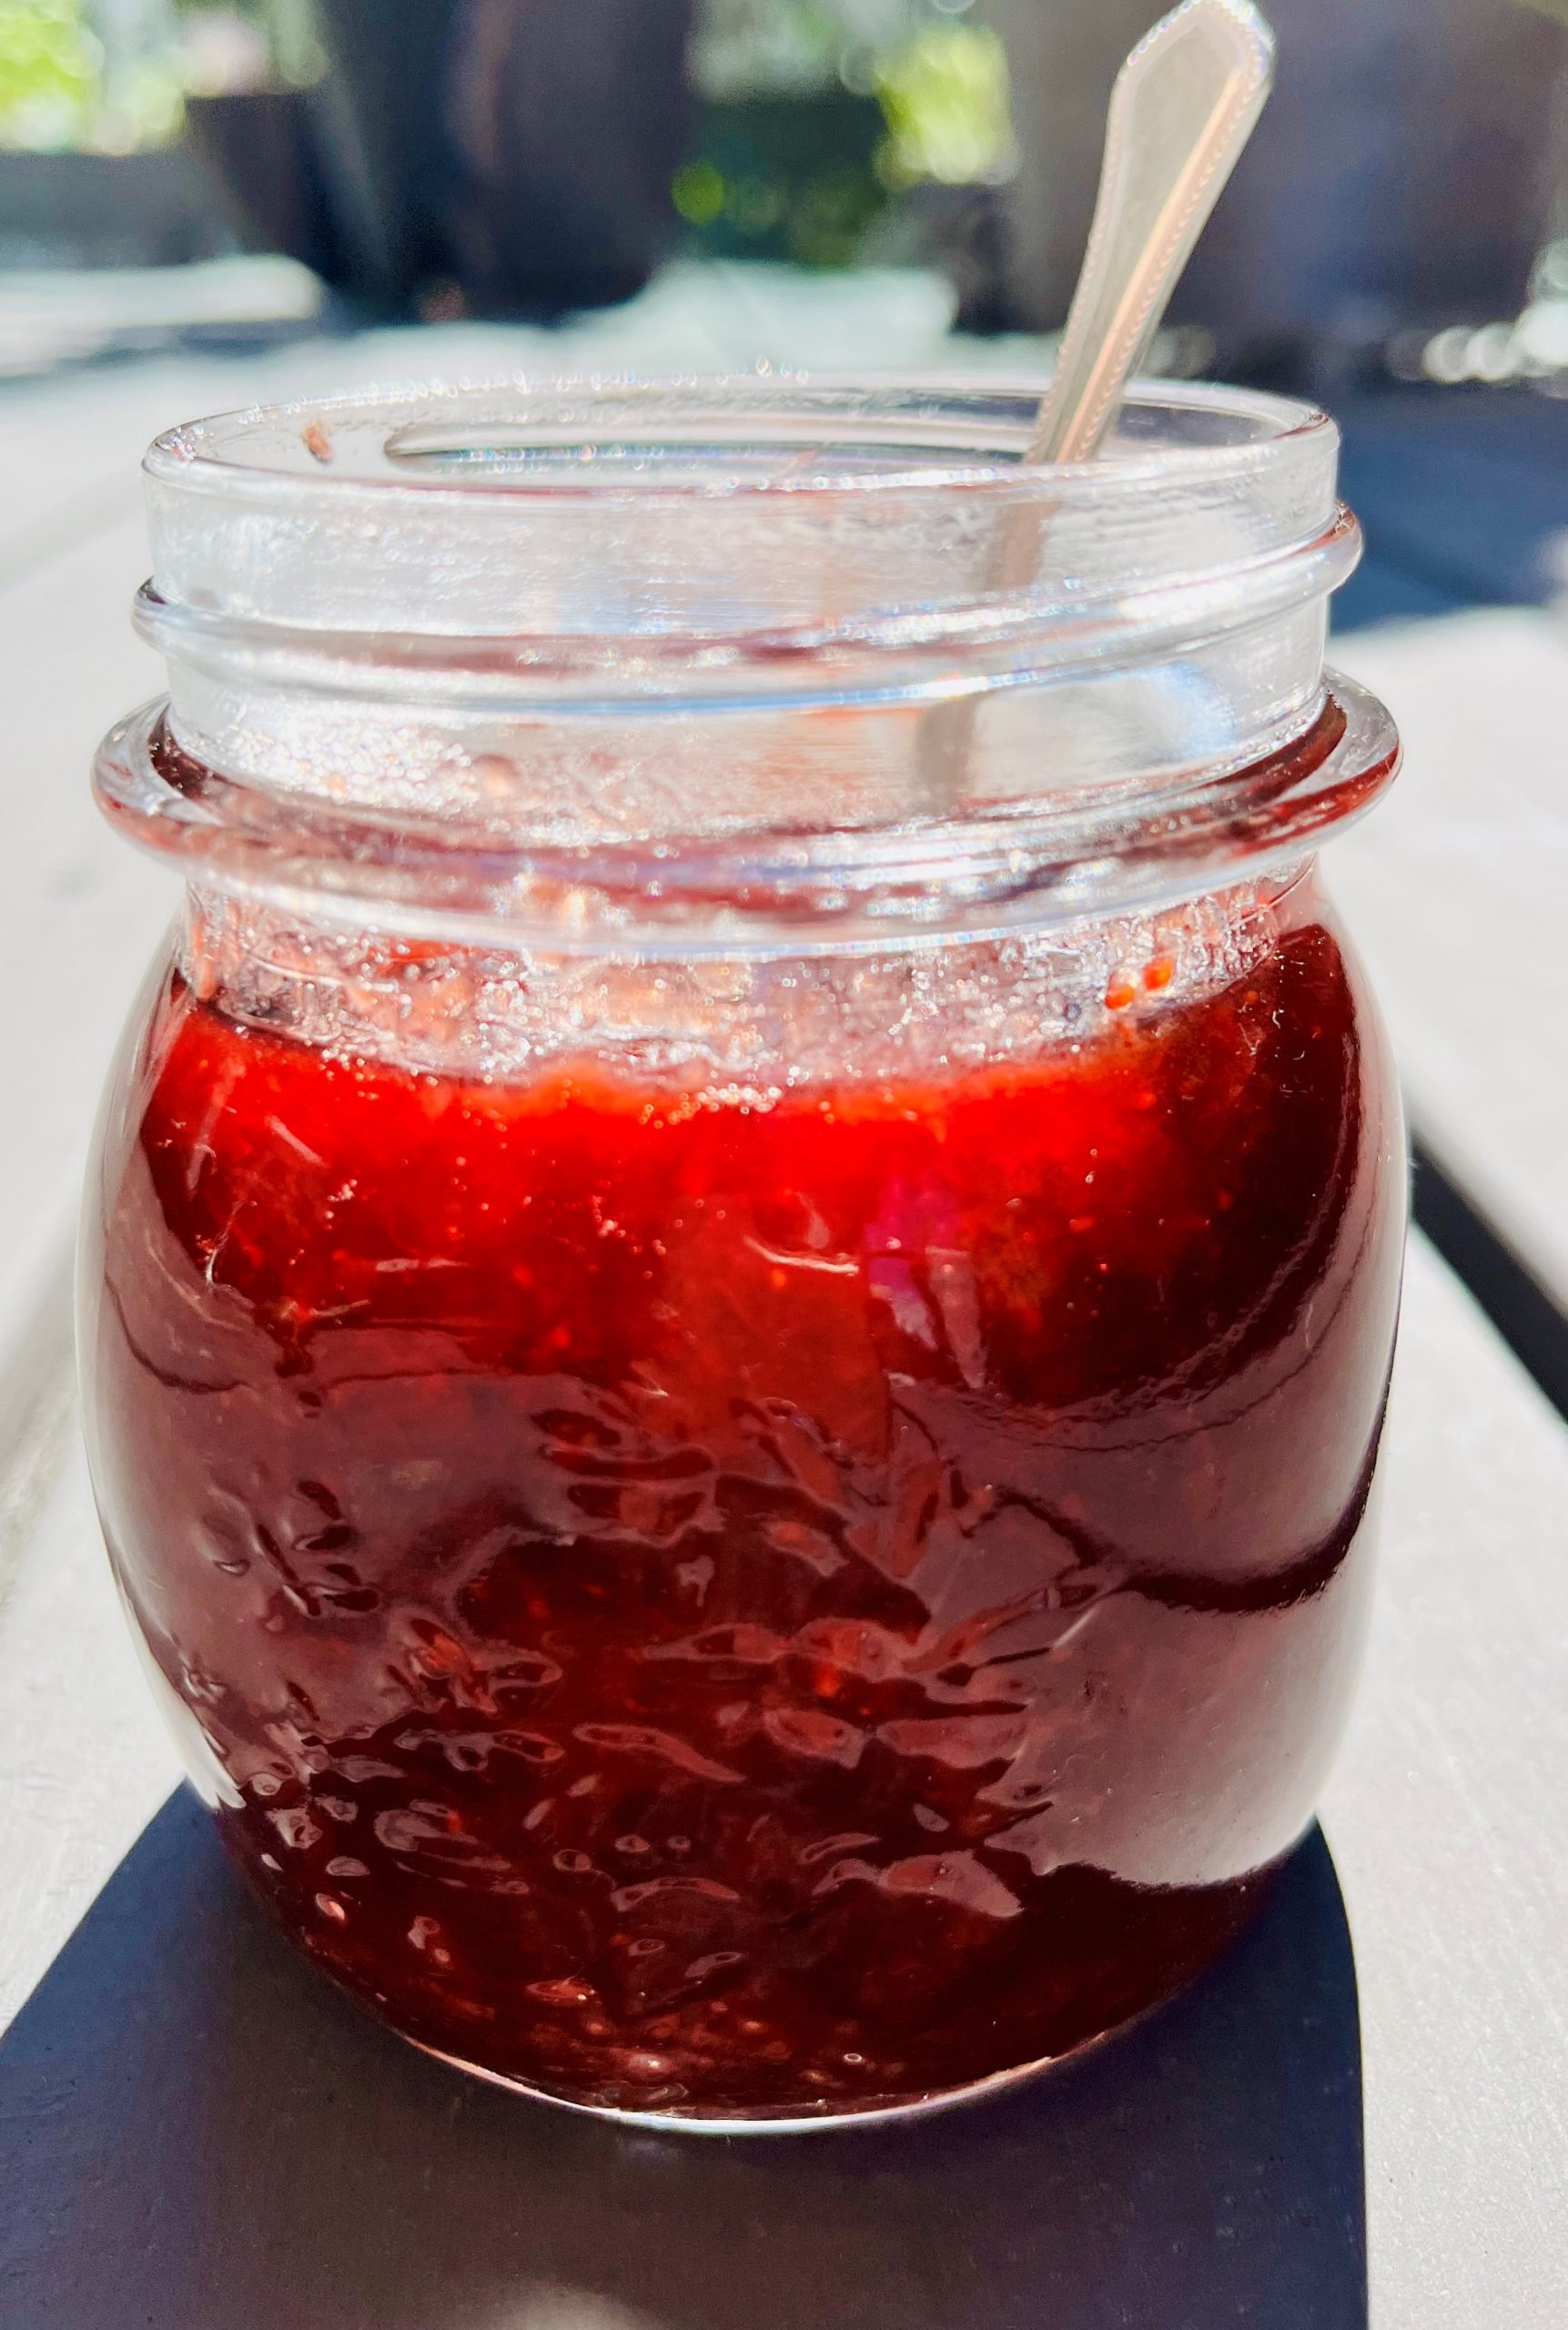 Pectin Free Strawberry Jam With Balsamic Vinegar And Rosemary